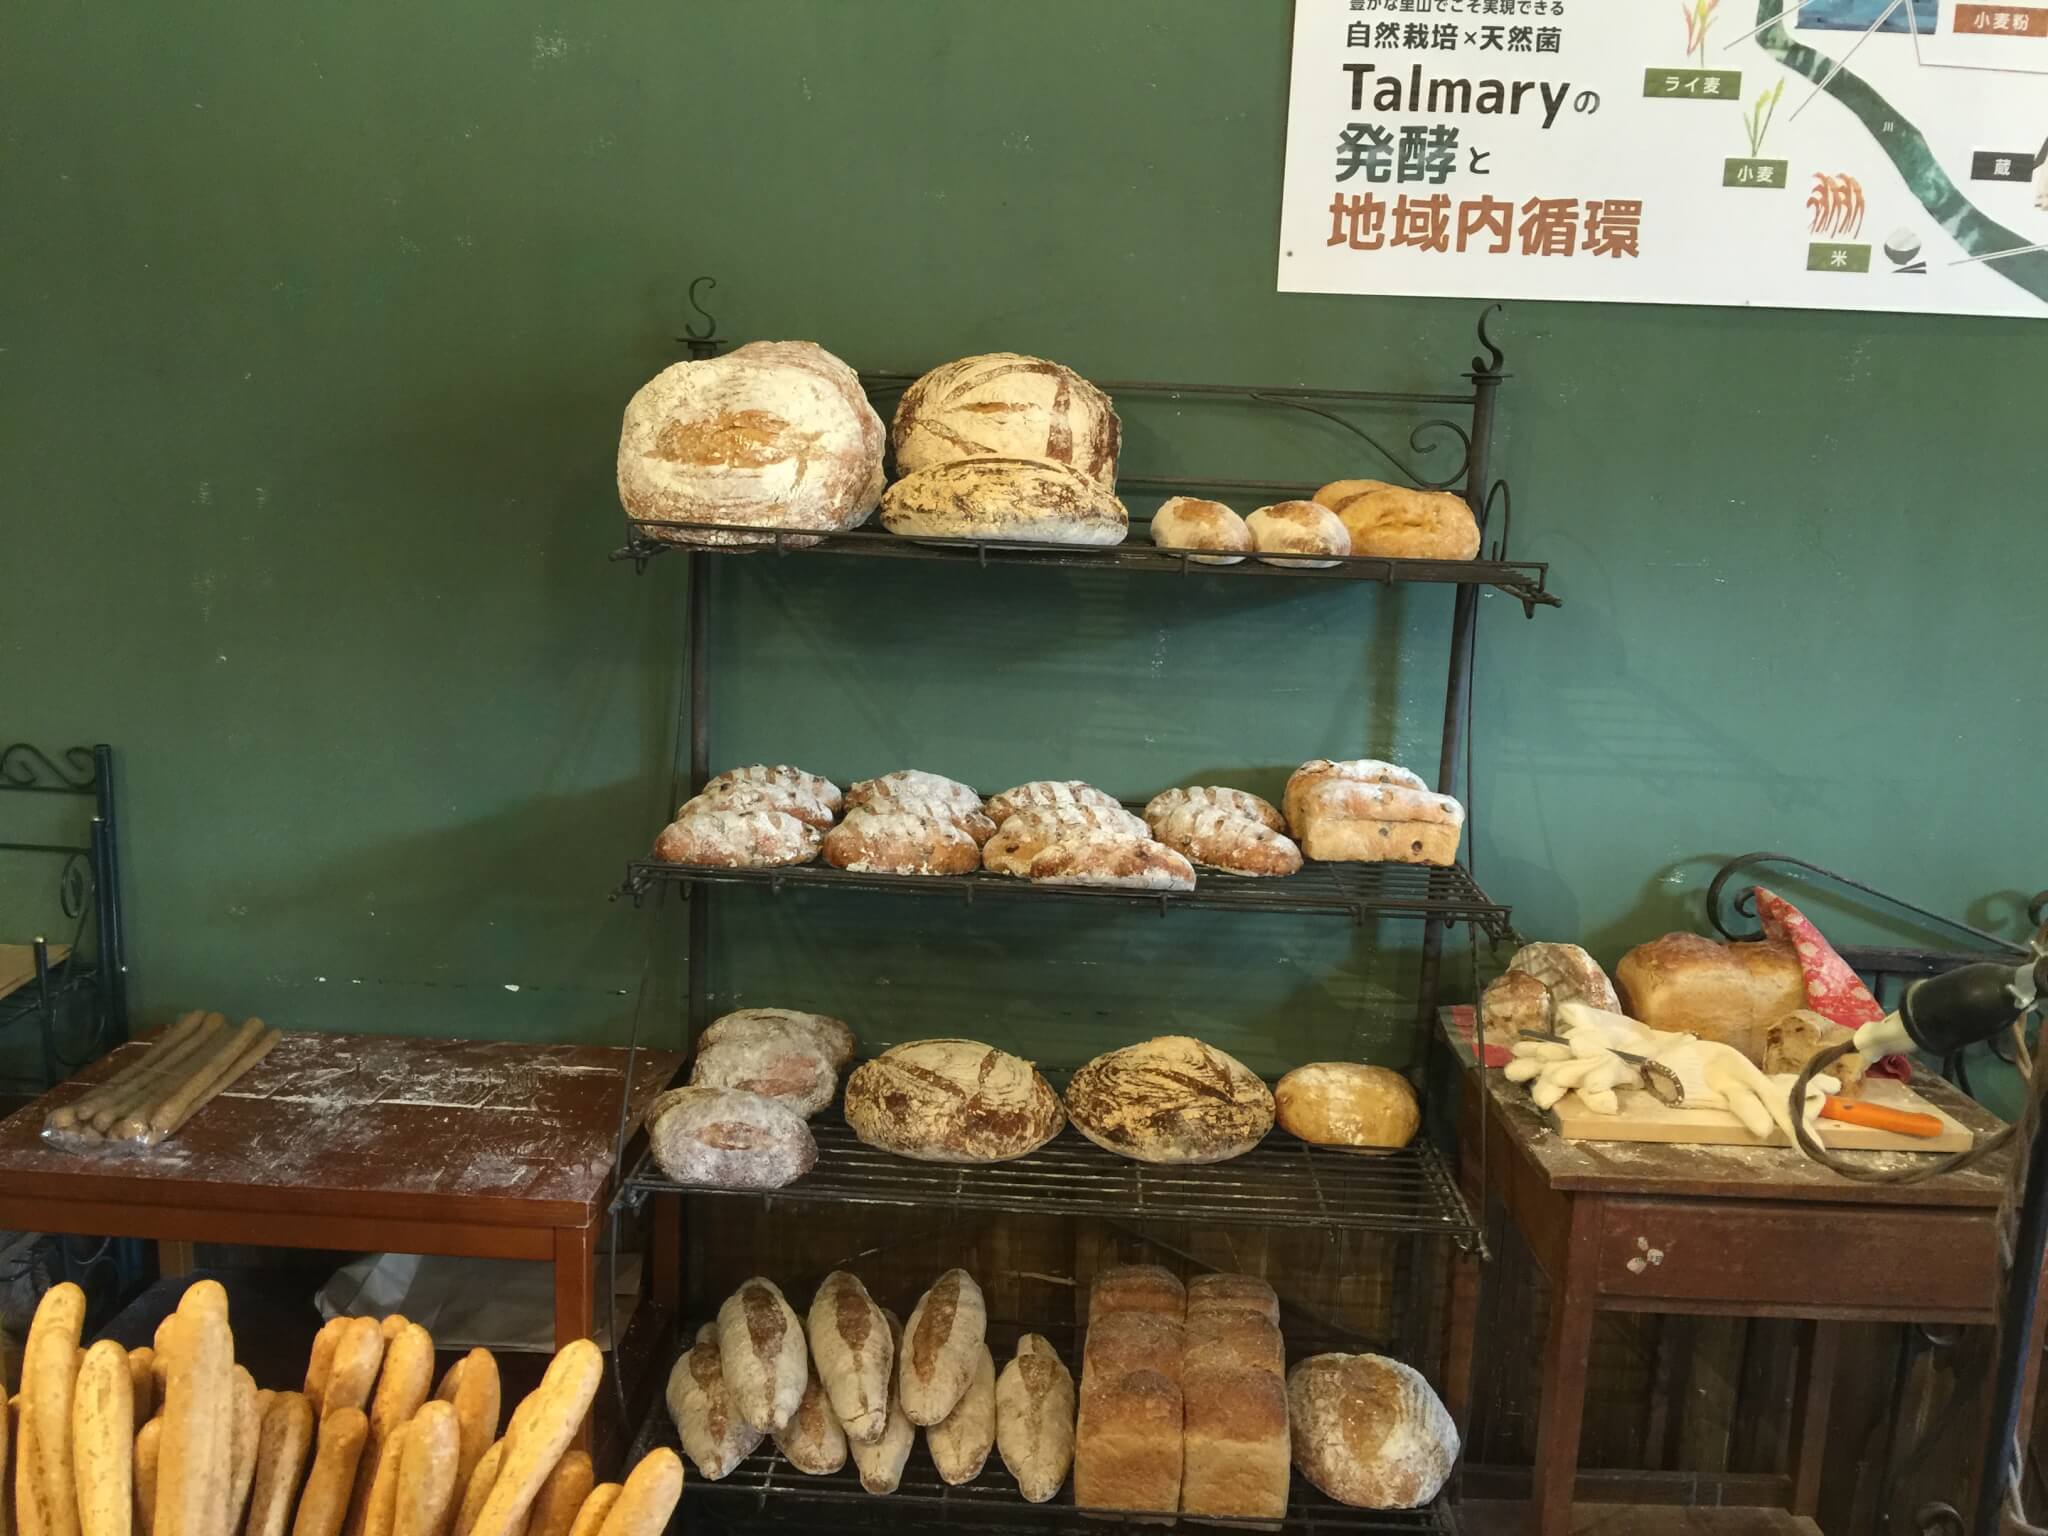 タルマーリーのパン